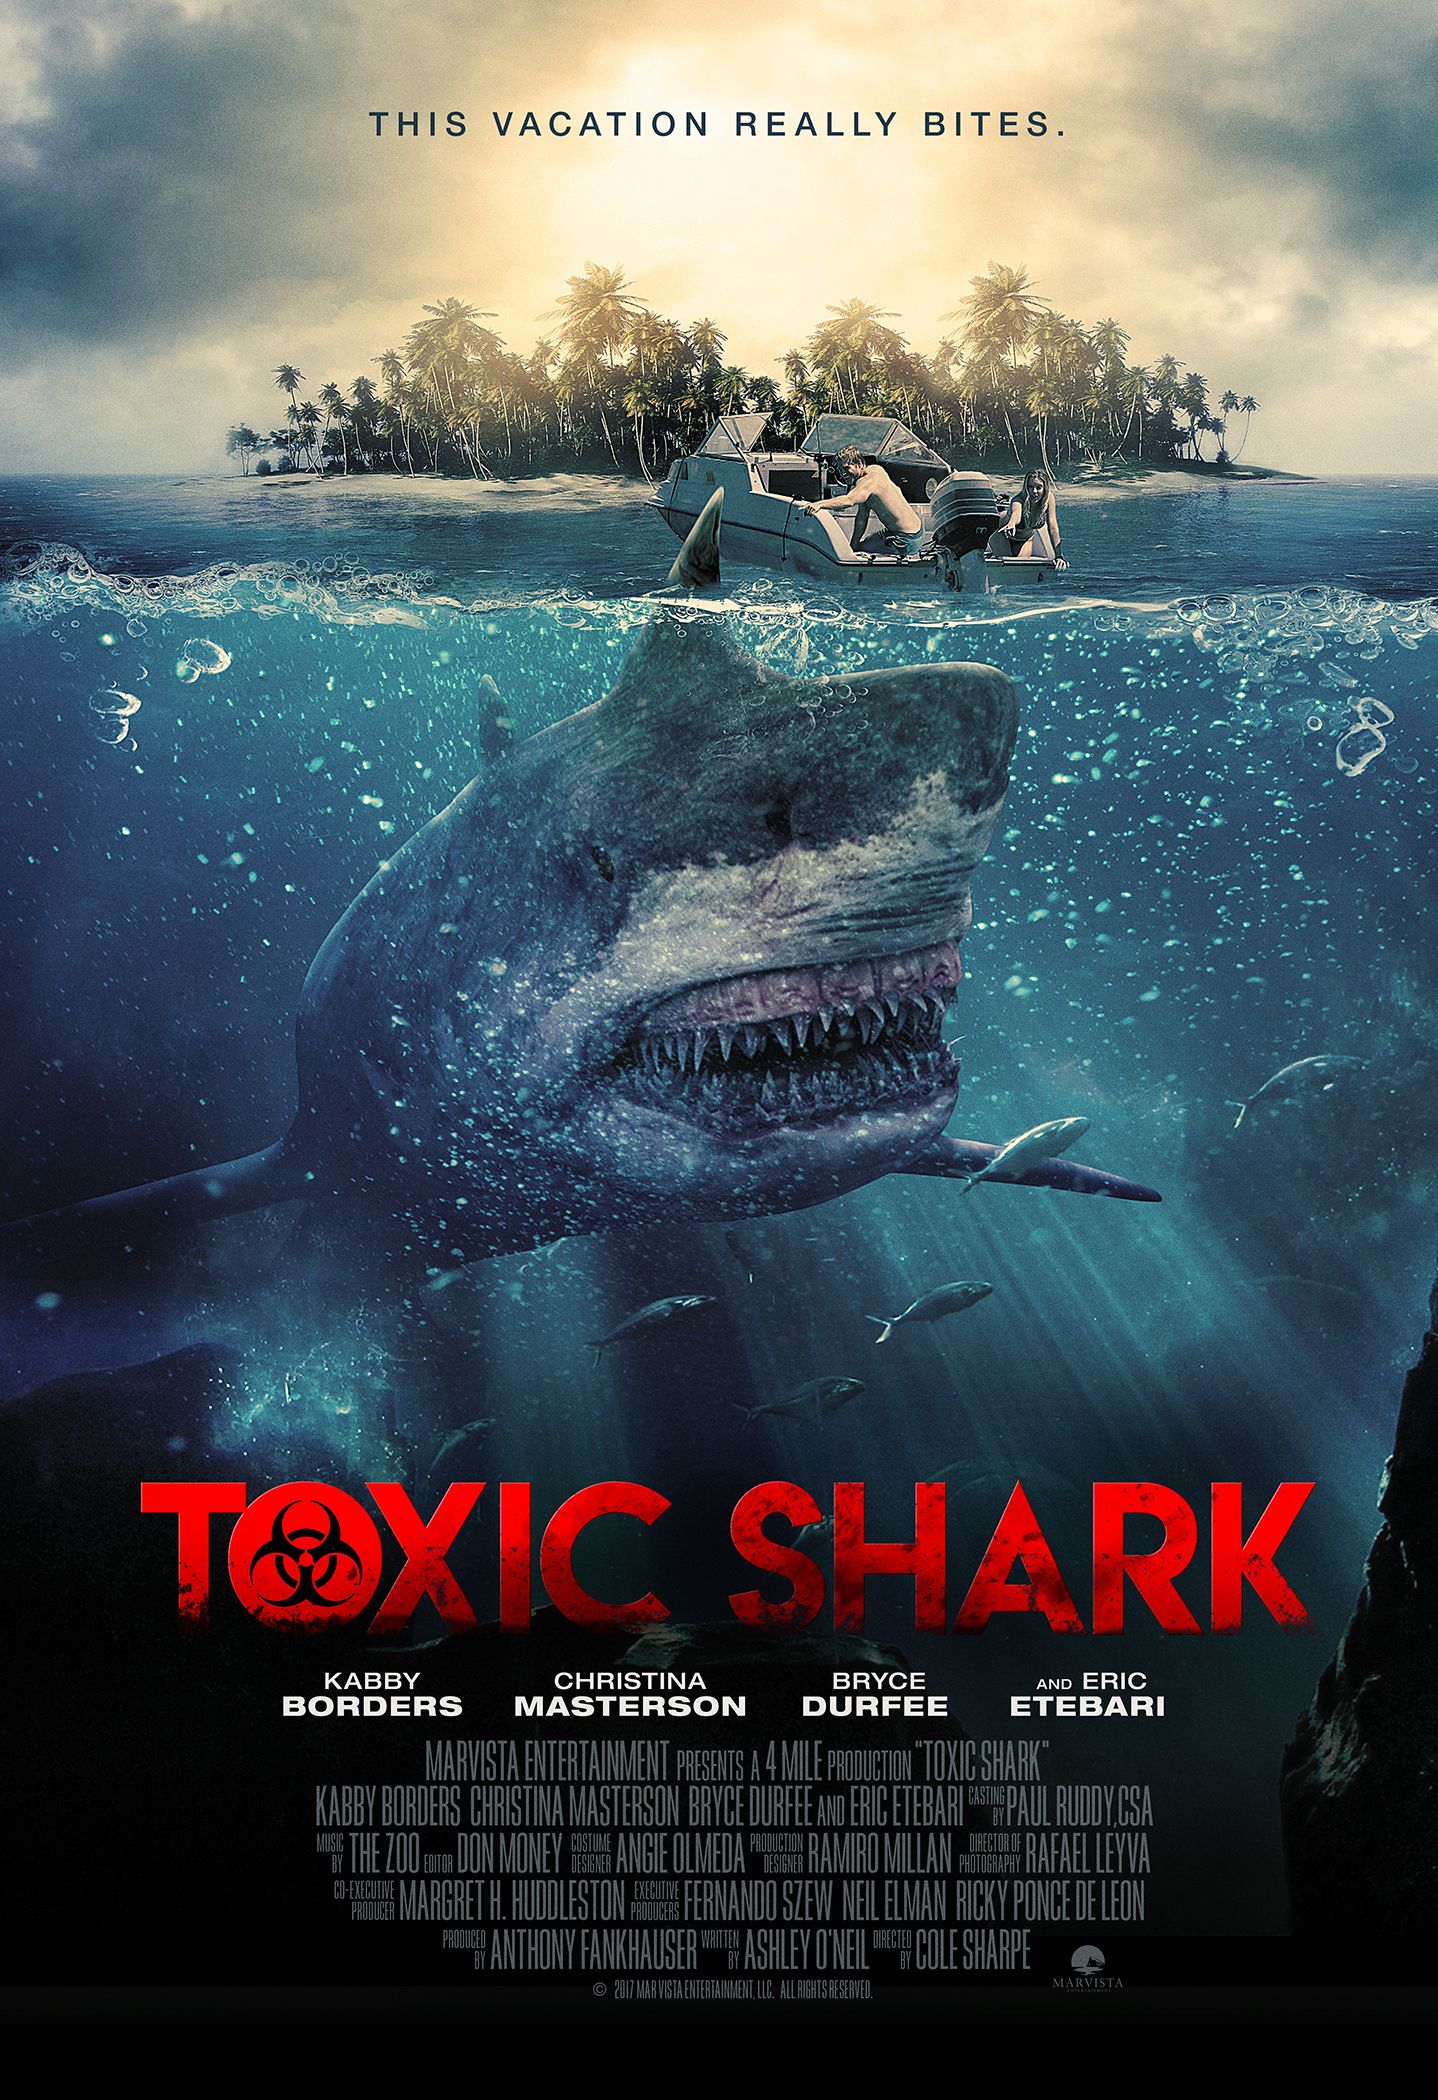 Toxic Shark (2017) Hindi Dubbed Movie